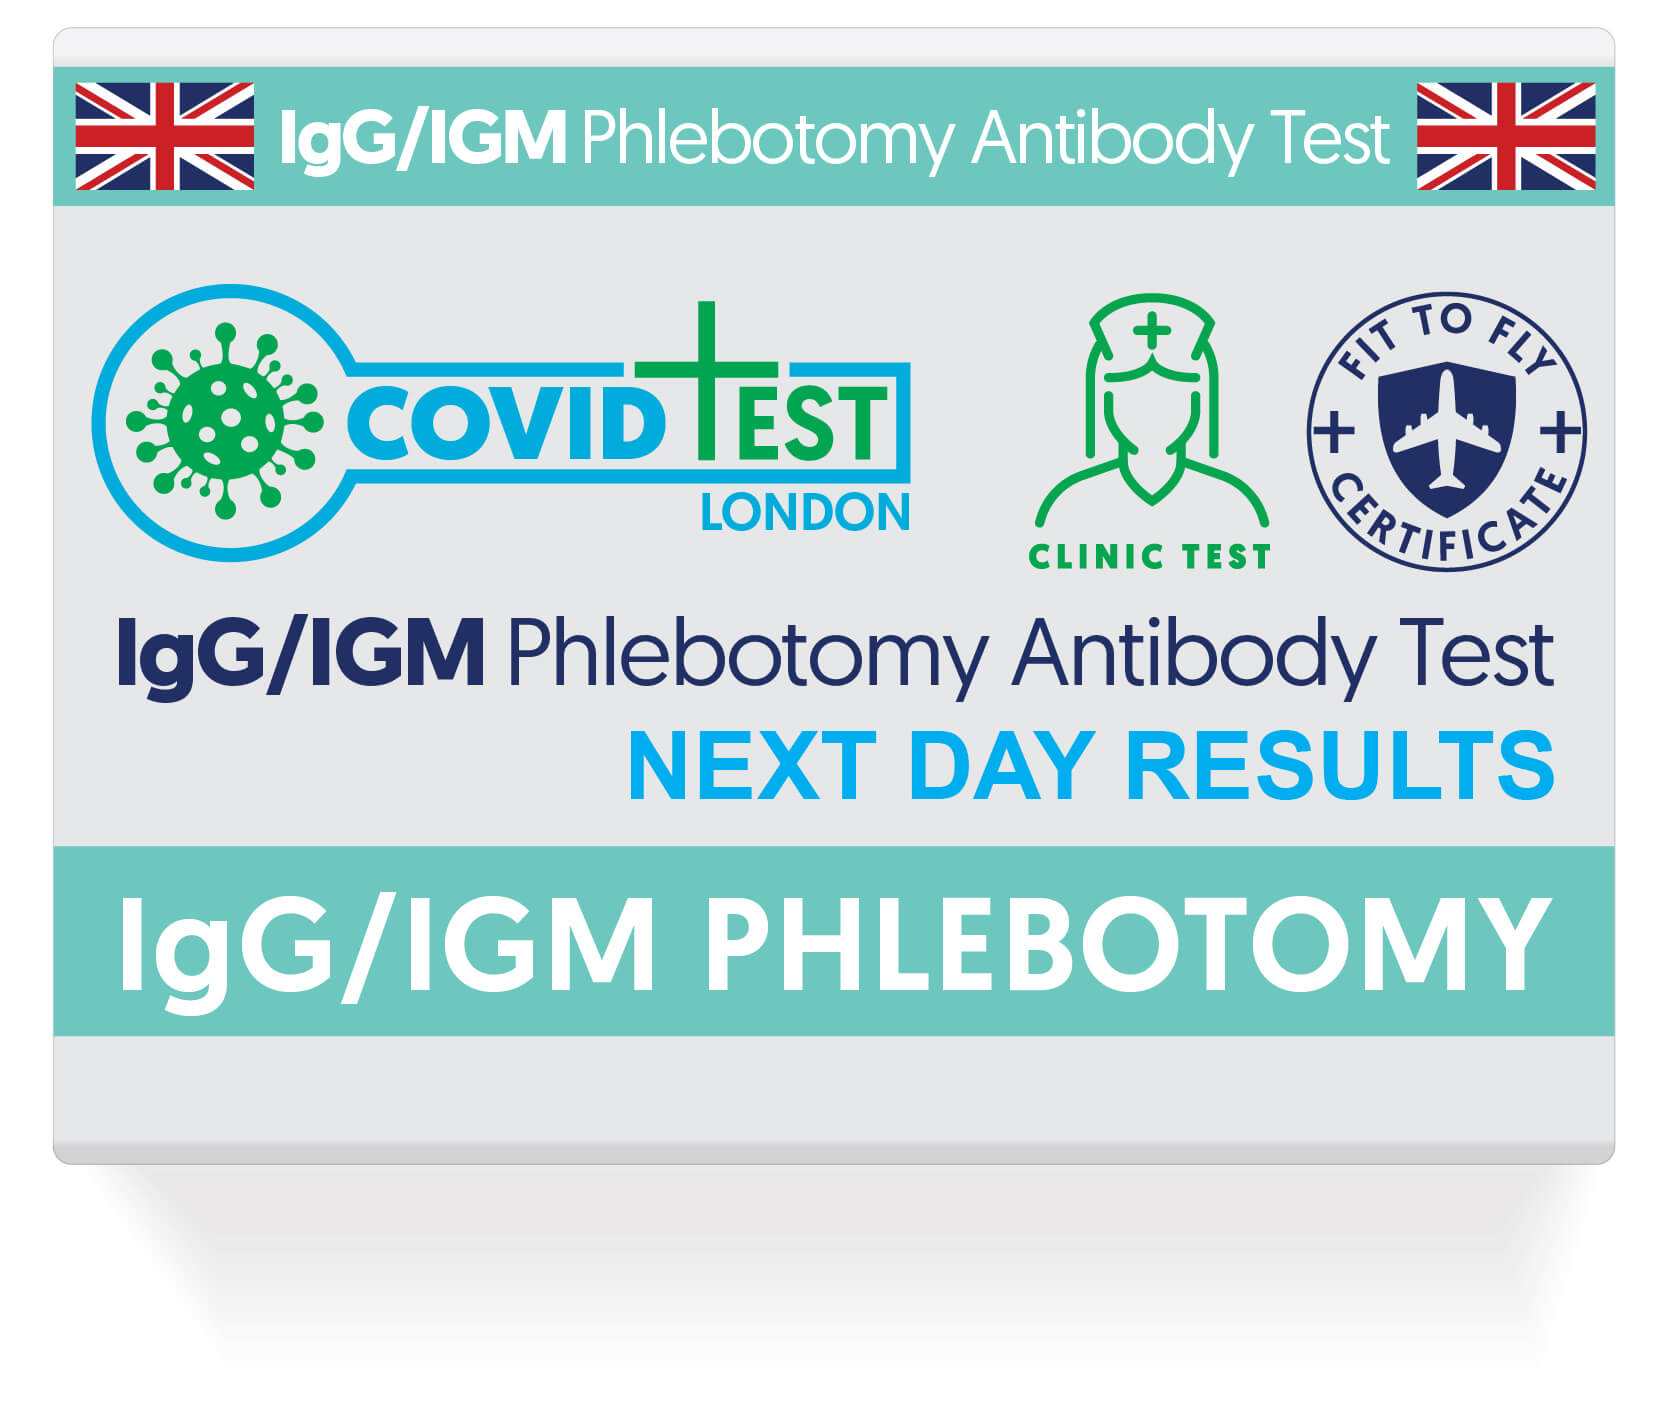 IgG/IGM Phlebotomy Antibody Test